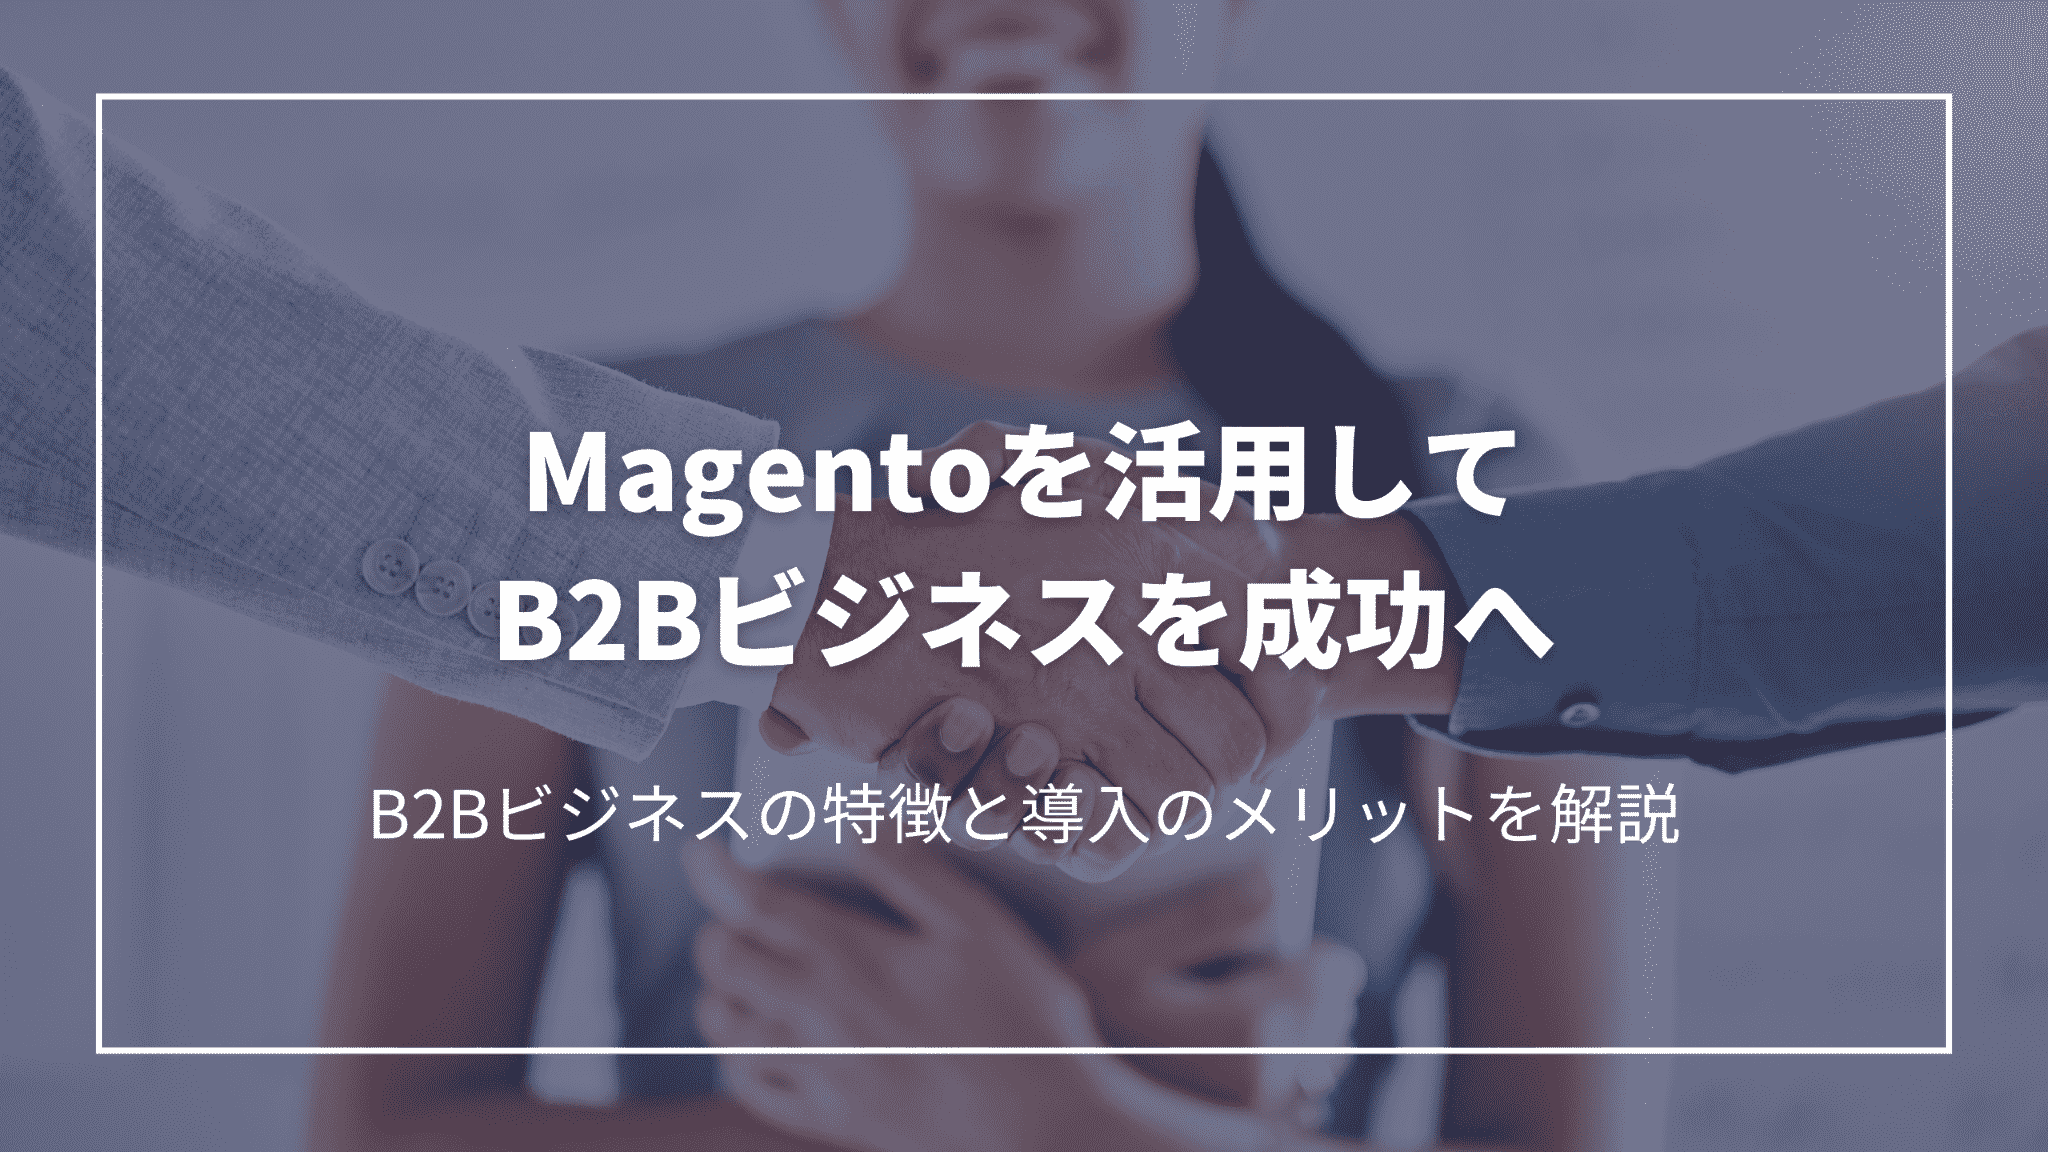 Magentoを活用してB2Bビジネスを成功へ：B2Bビジネスの特徴と導入のメリットを解説